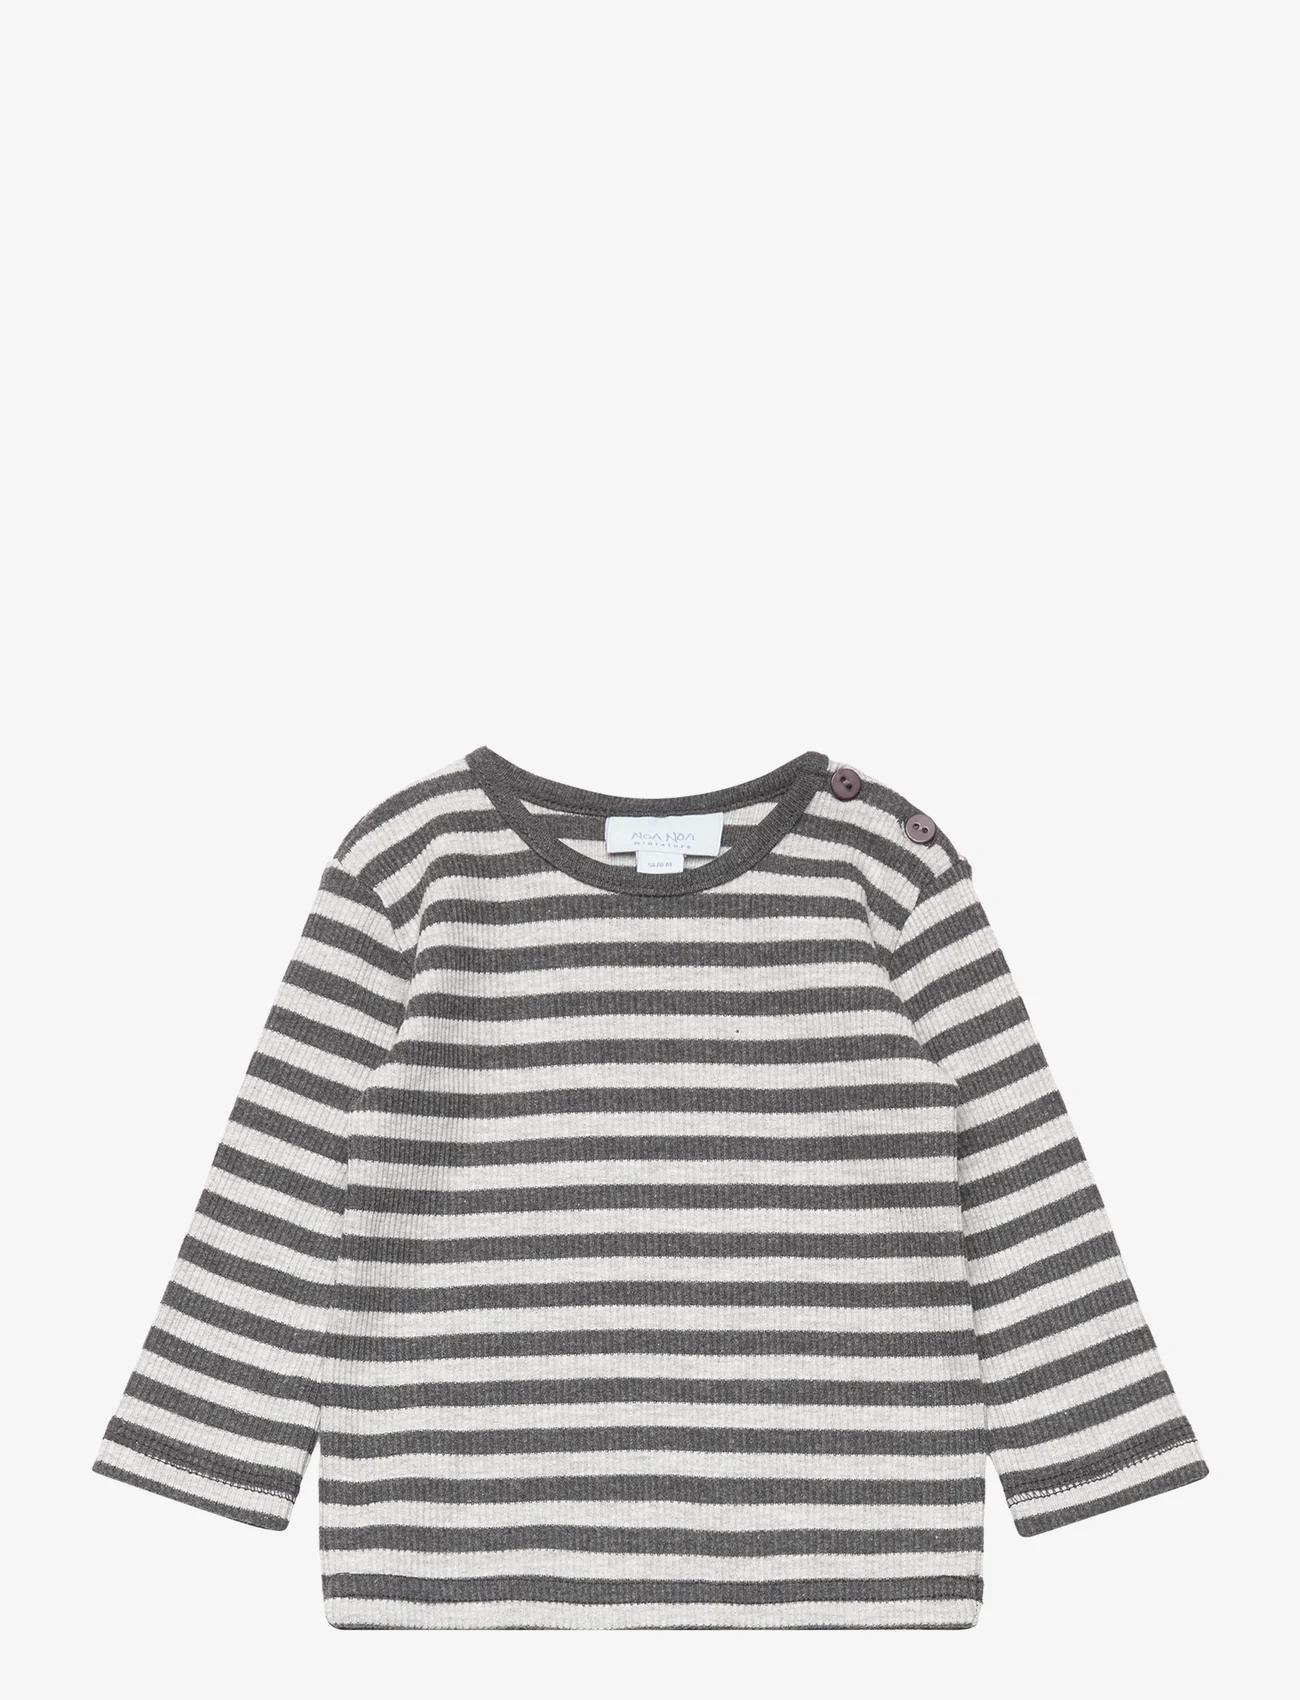 Noa Noa miniature - T-shirt - dlugi-rekaw - light/dark grey melange - 0